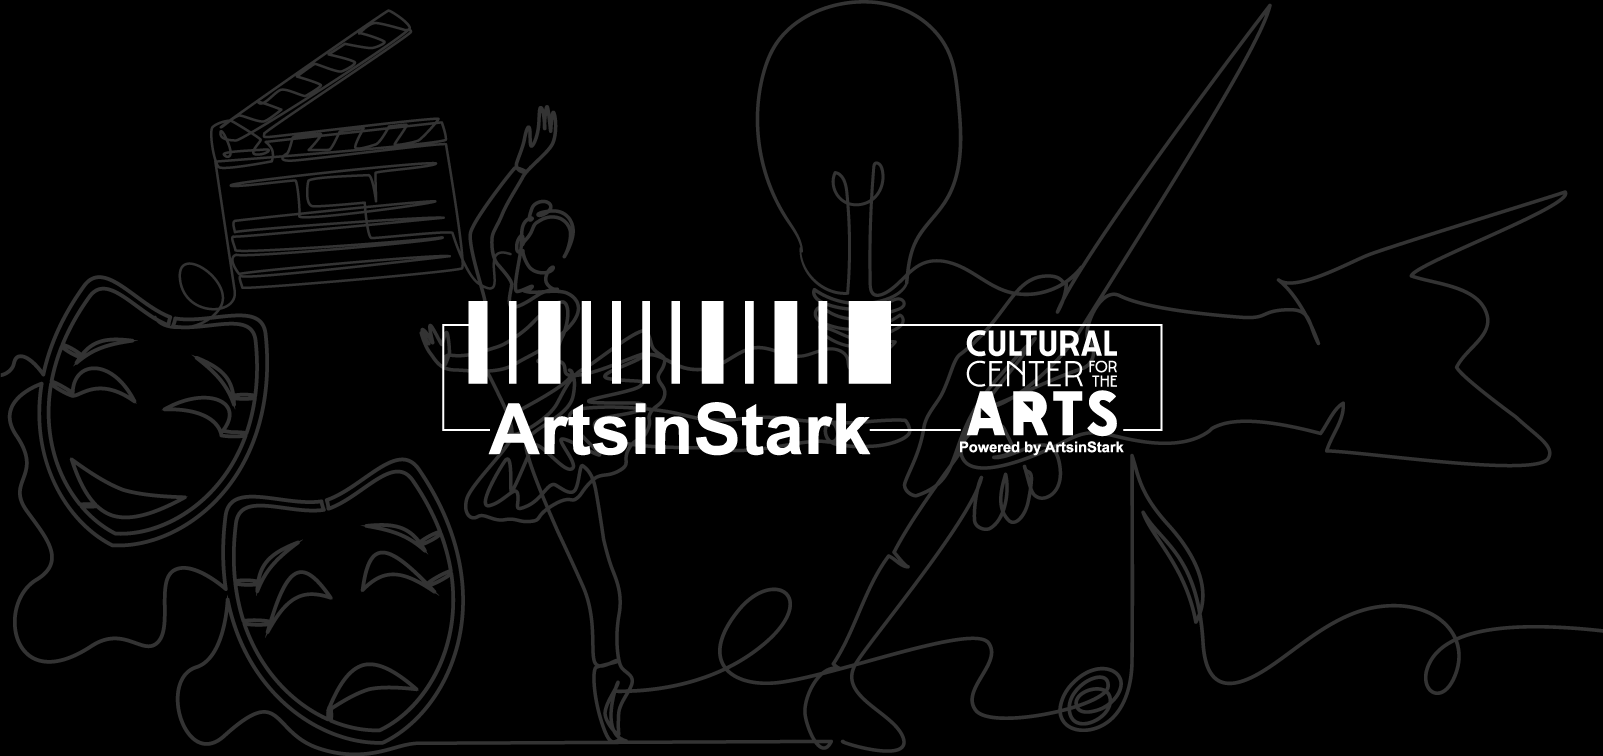 ArtsinStark 2021 Start with Art Campaign